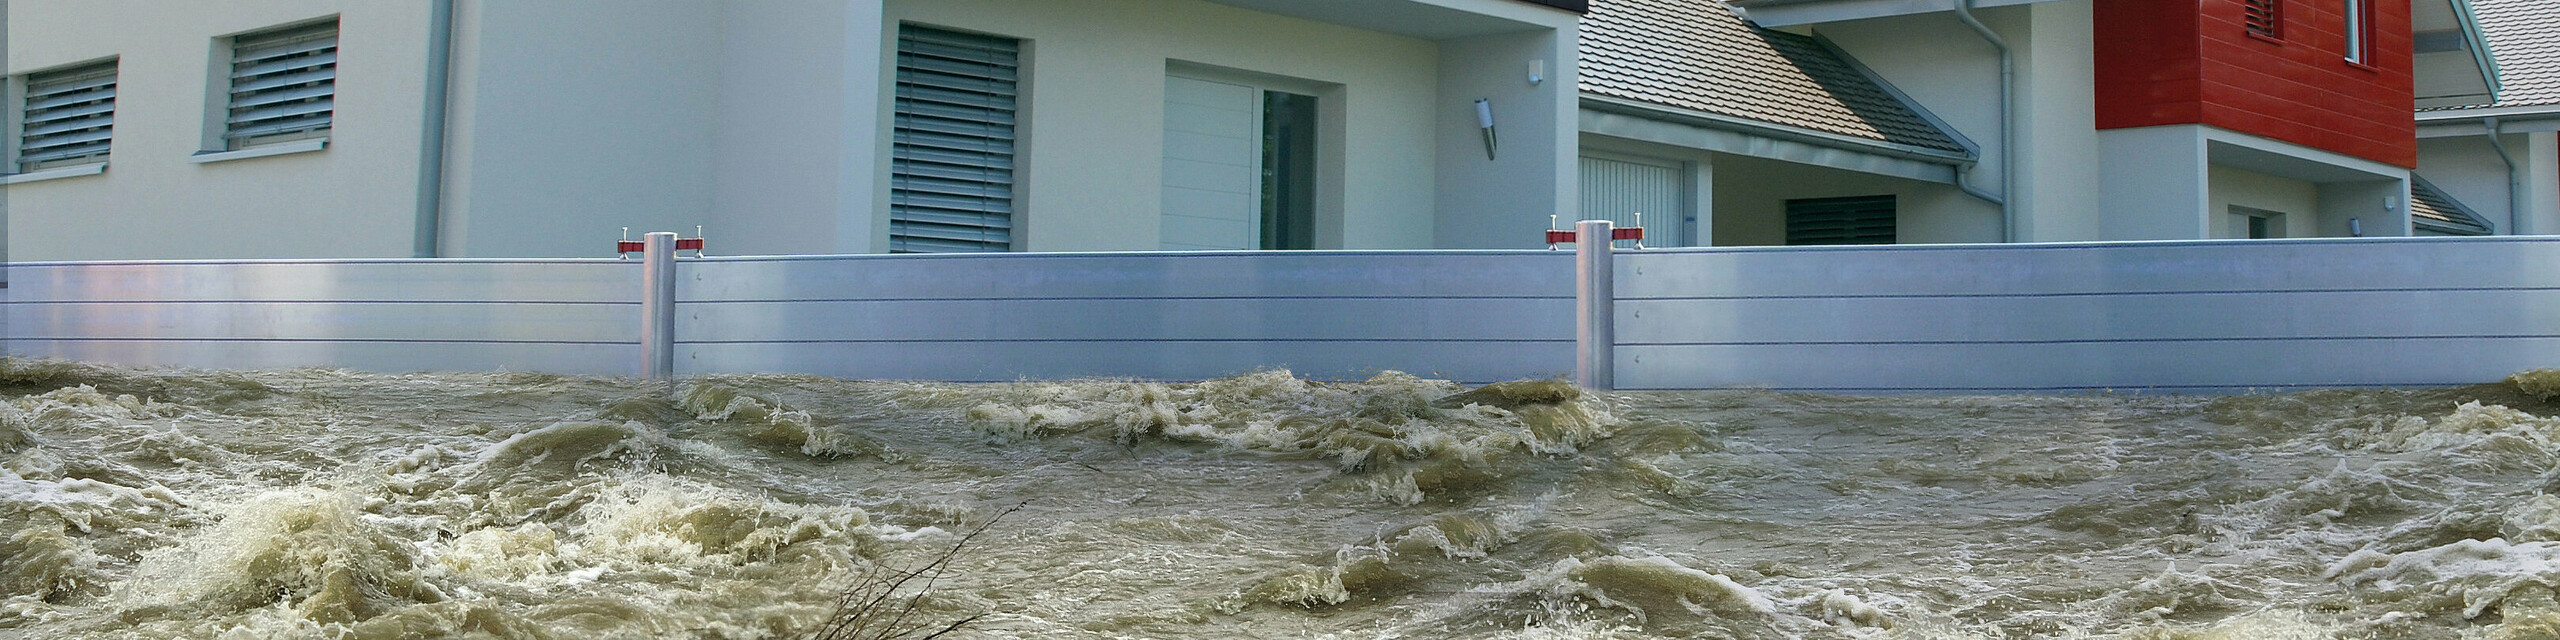 Auf dem Bild ist ein PREFA Hochwasserschutz zu sehen, der mehrere Häuser von großen Wassermengen schützt.